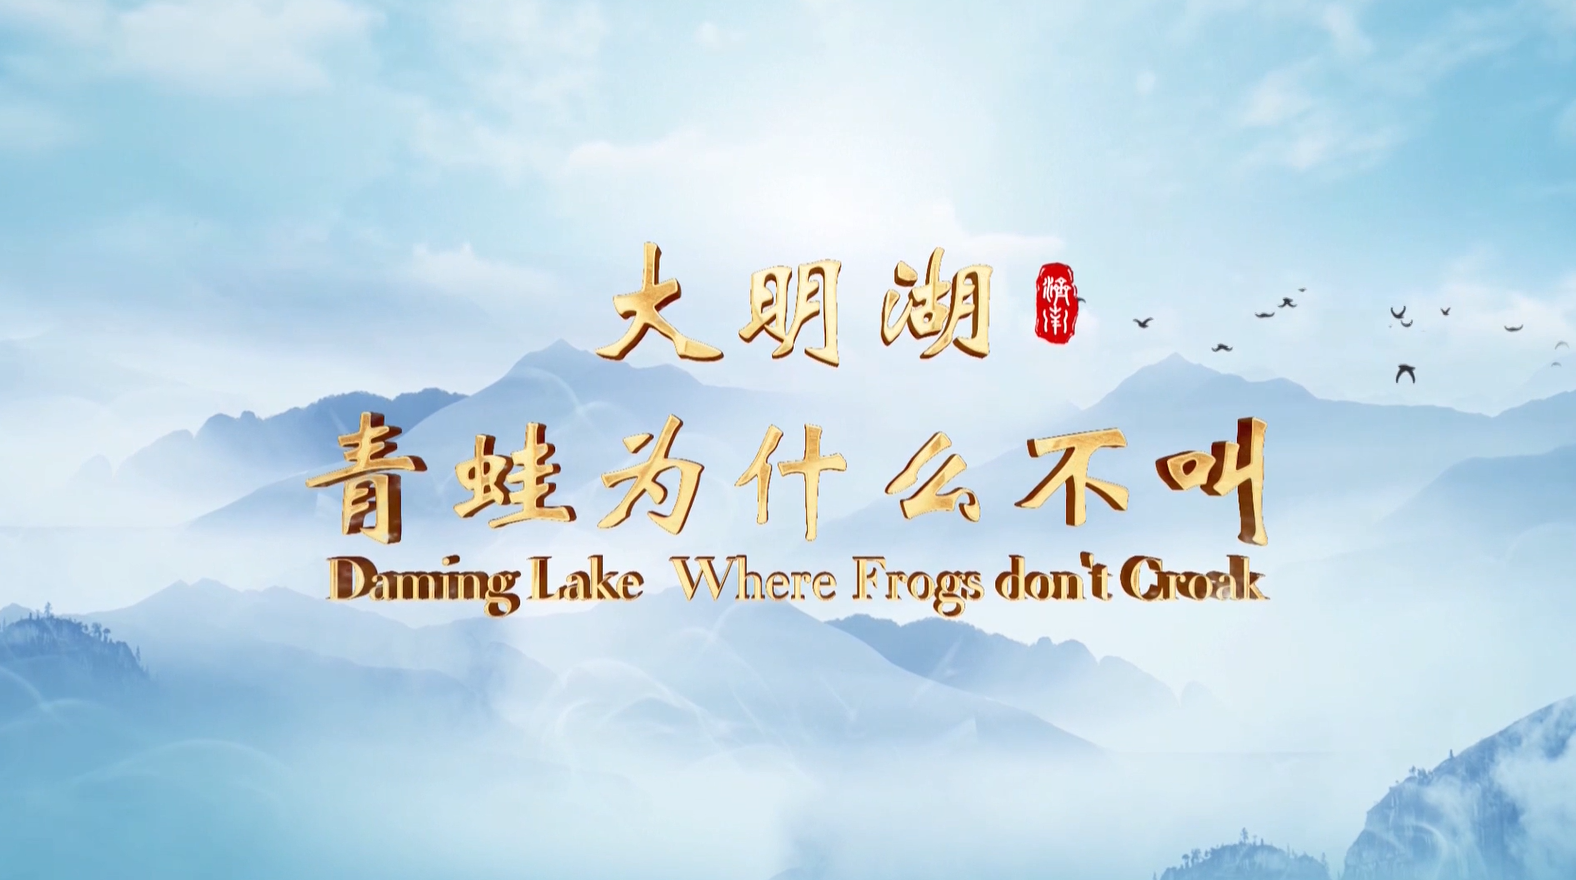 Episode II Daming Lake, Where Frogs don’t Croak